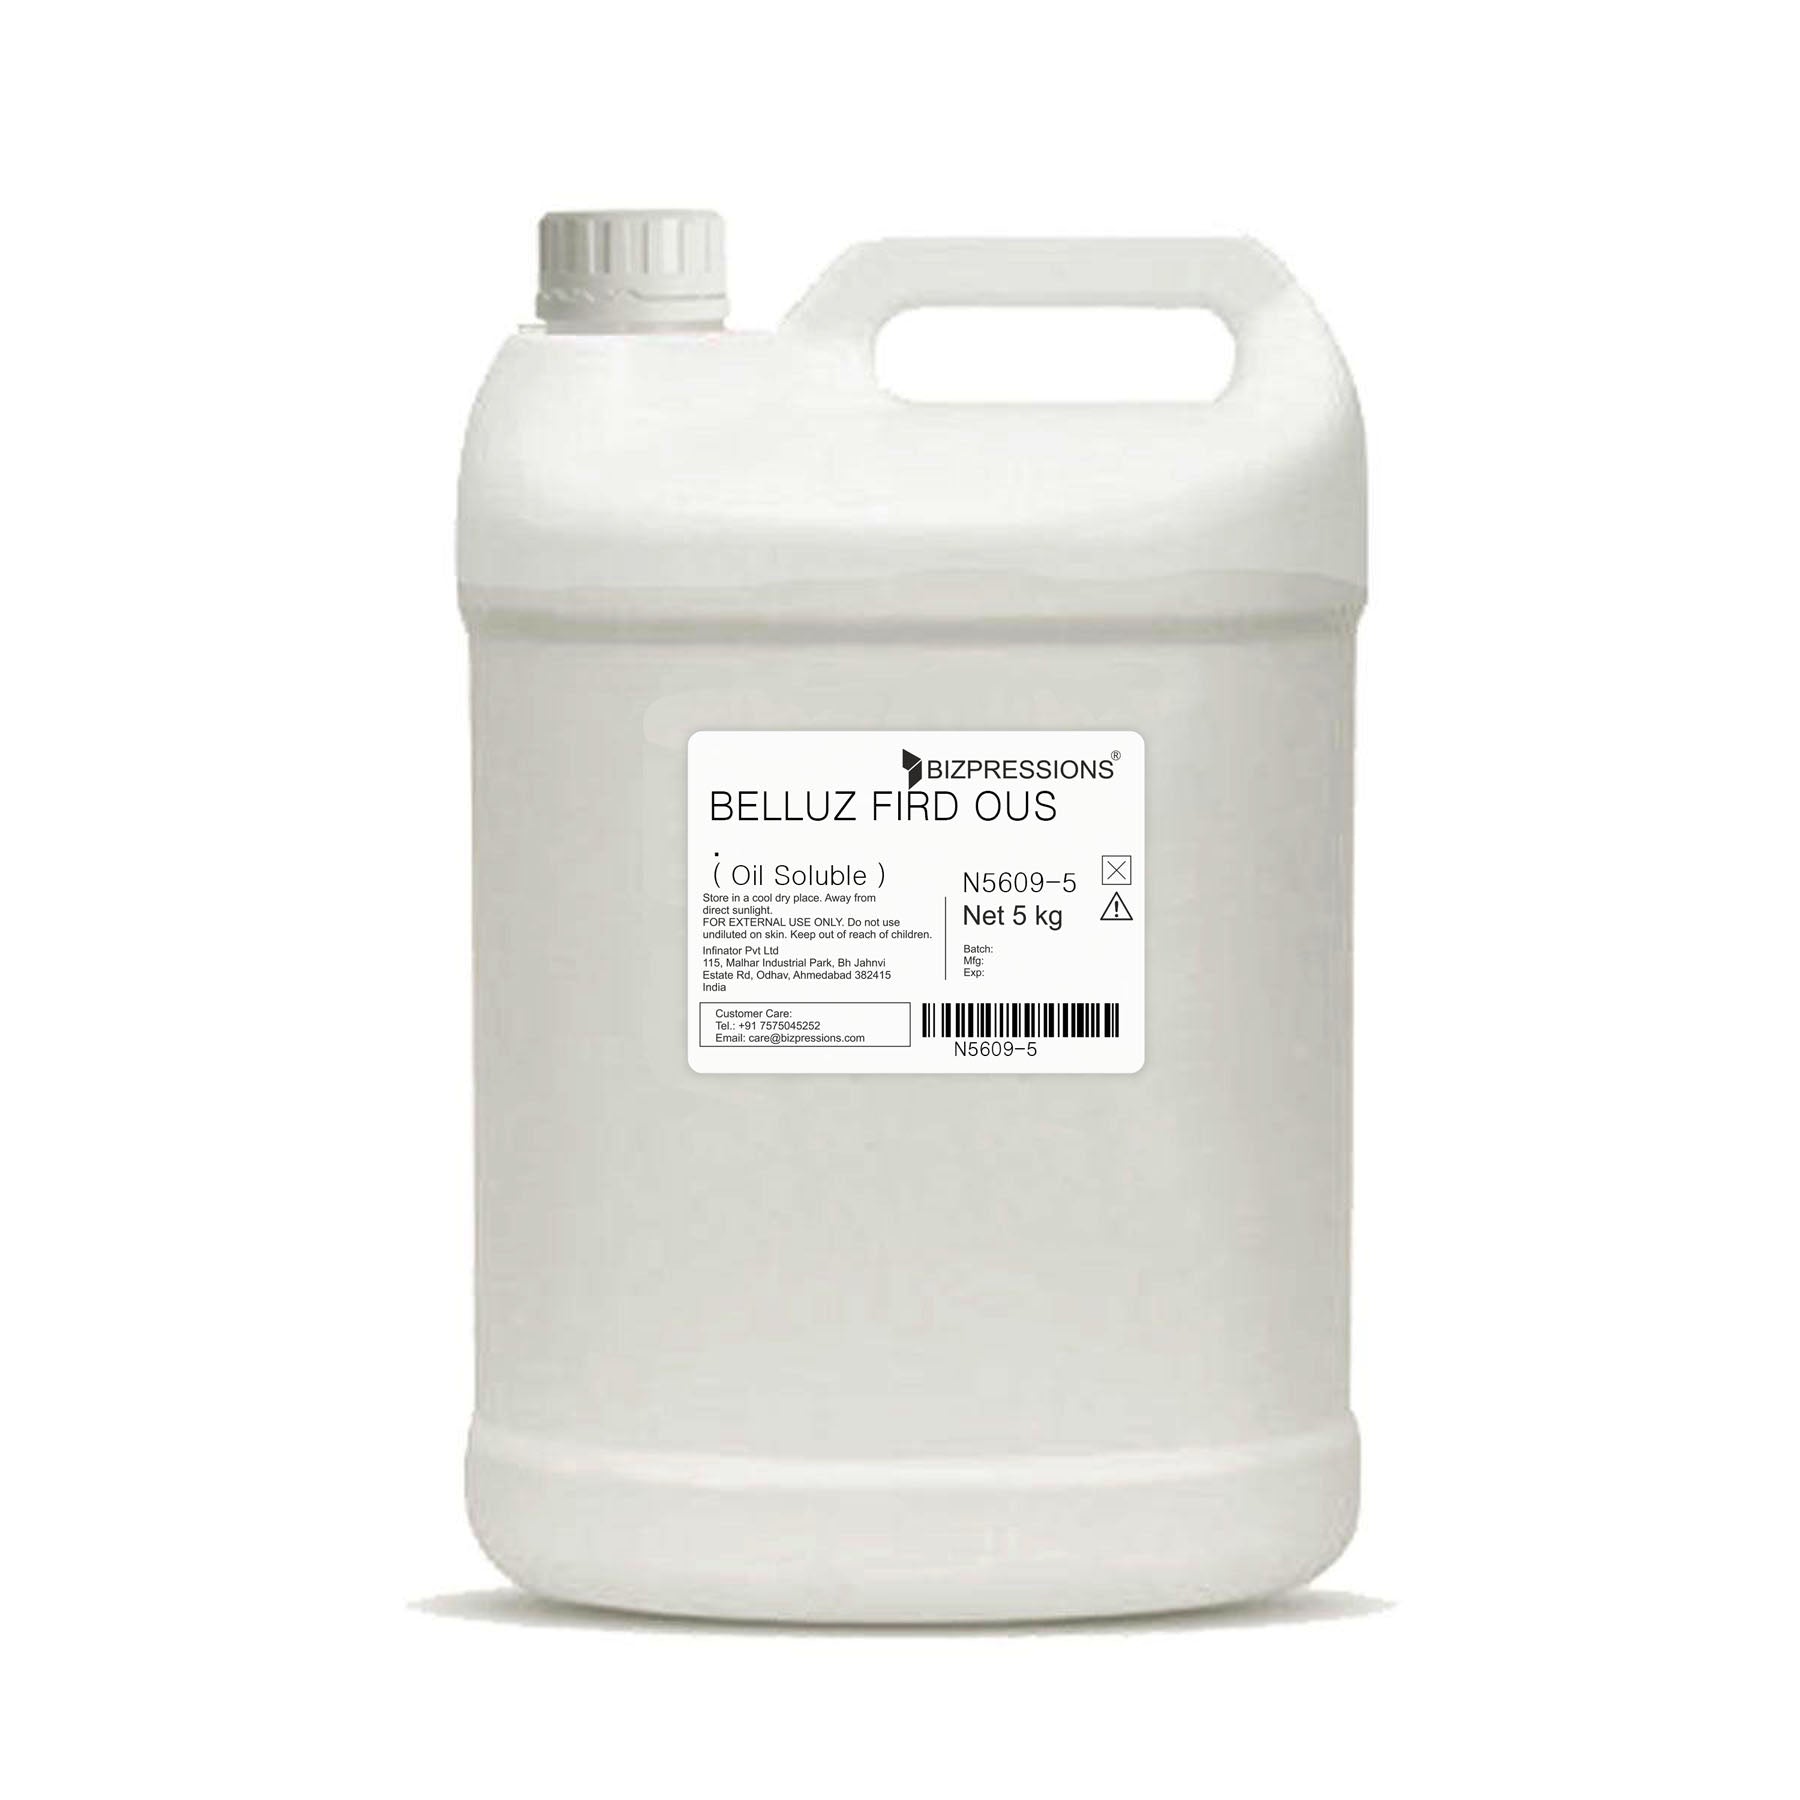 BELLUZ FIRDOUS - Fragrance ( Oil Soluble ) - 5 kg